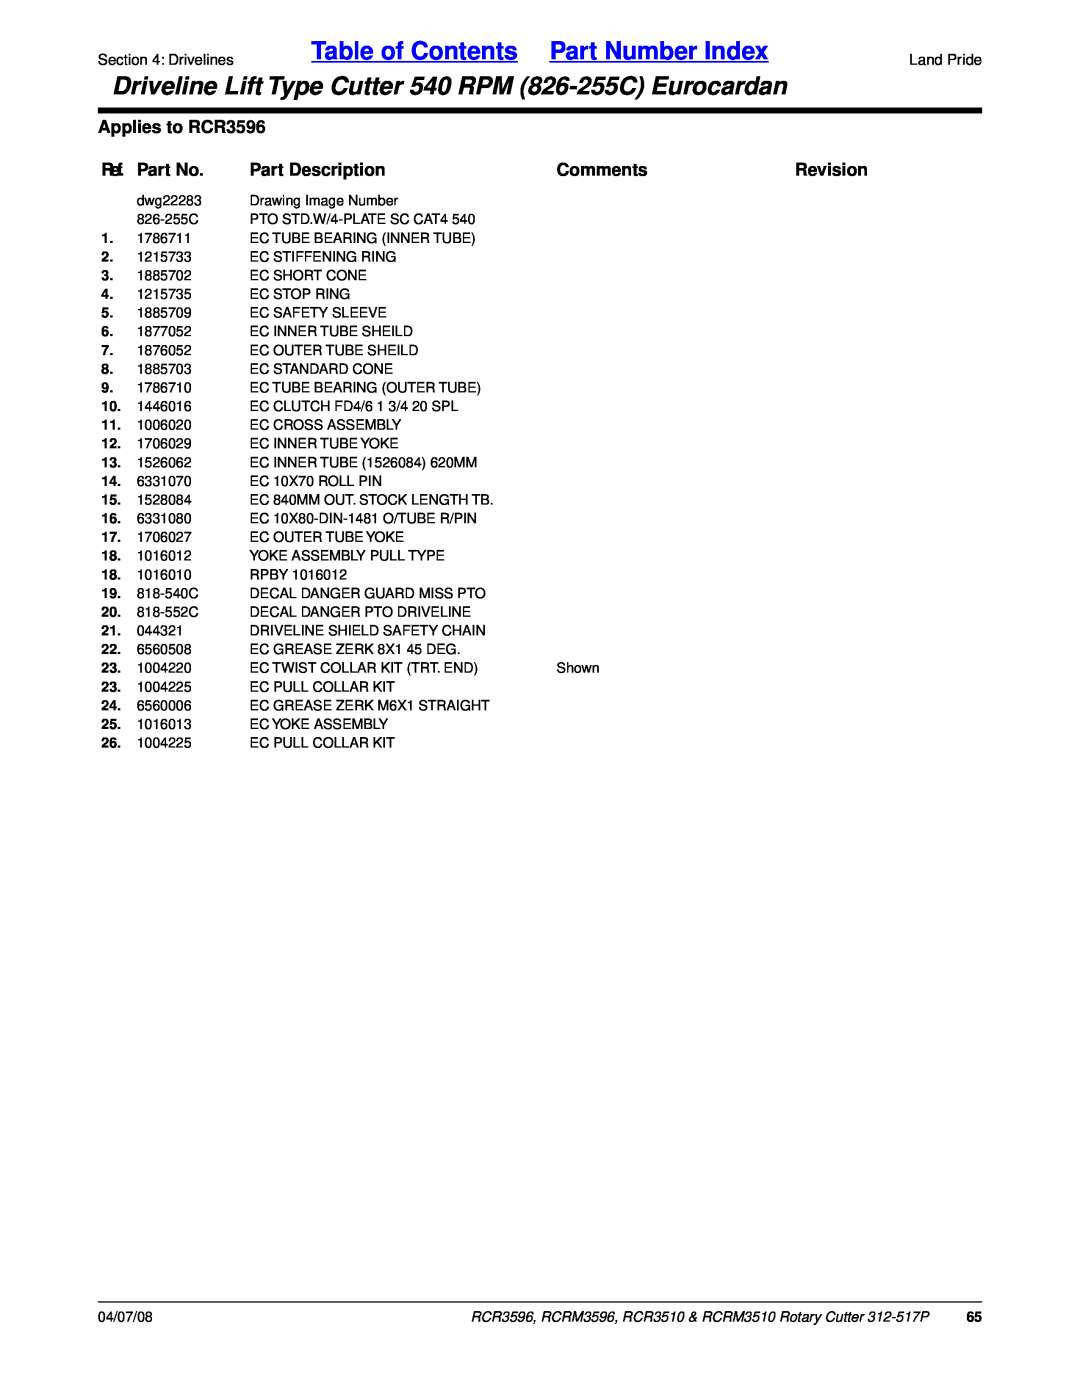 Land Pride RCRM3510 Table of Contents Part Number Index, Applies to RCR3596, Ref. Part No, Part Description, Comments 